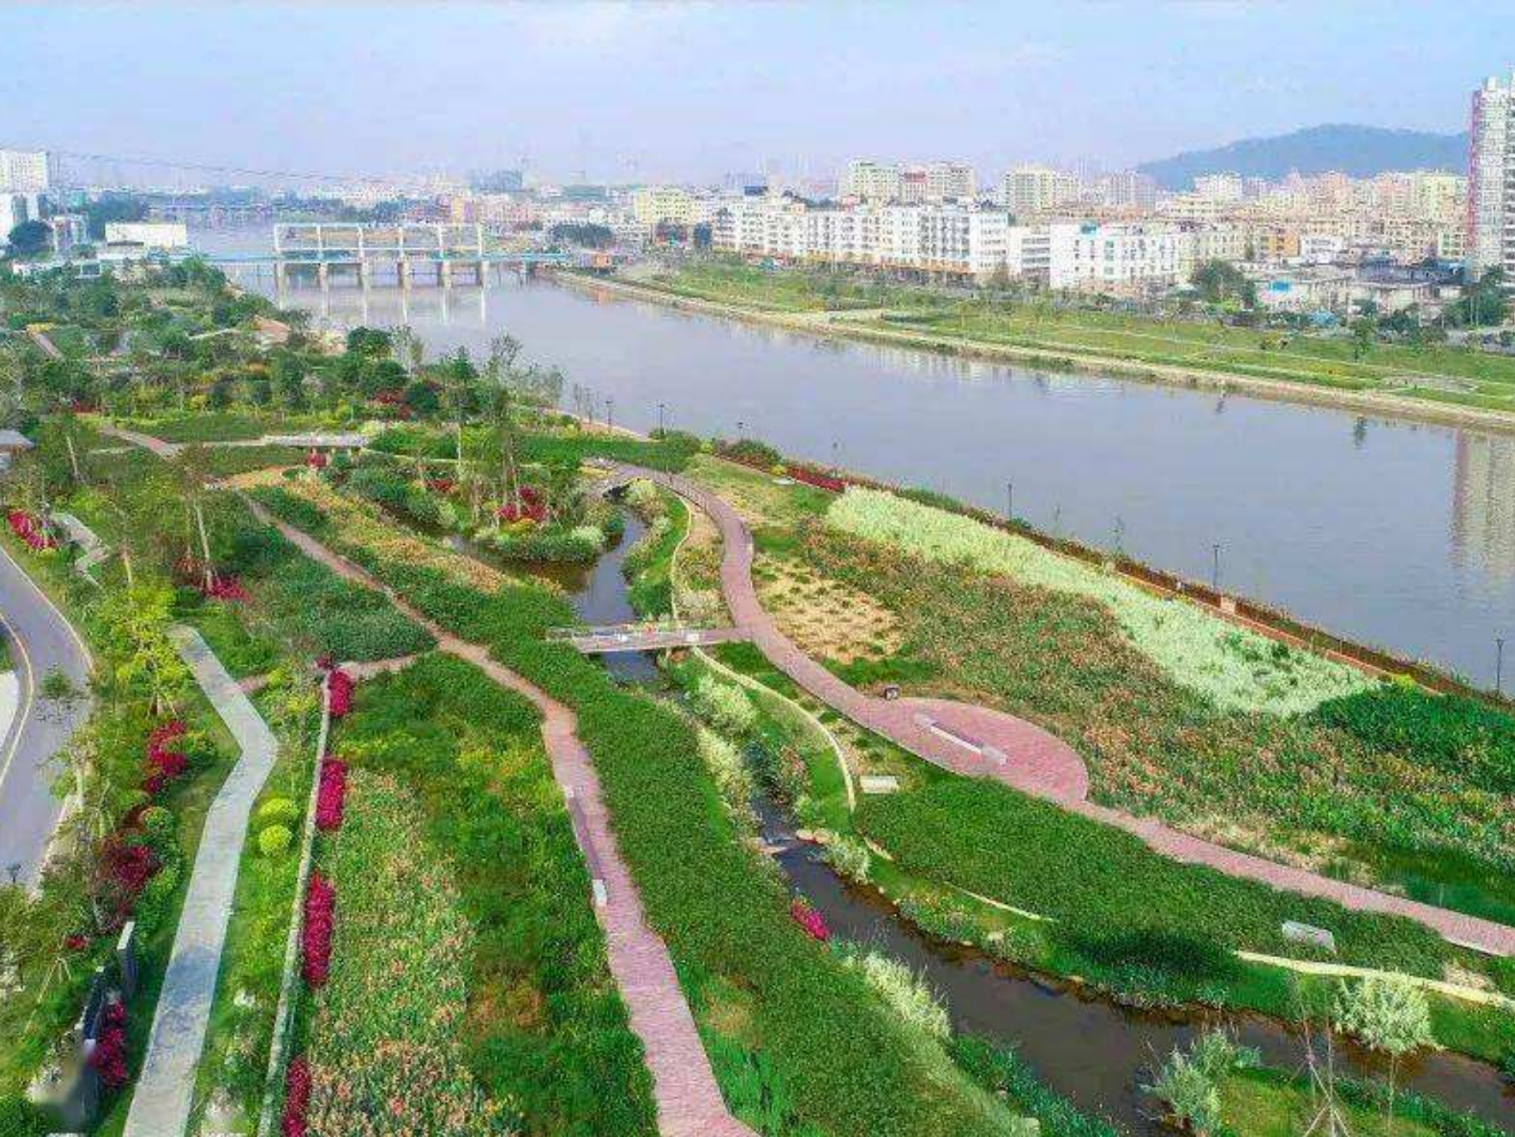 深圳湿地美景如画   市民共享生态福祉